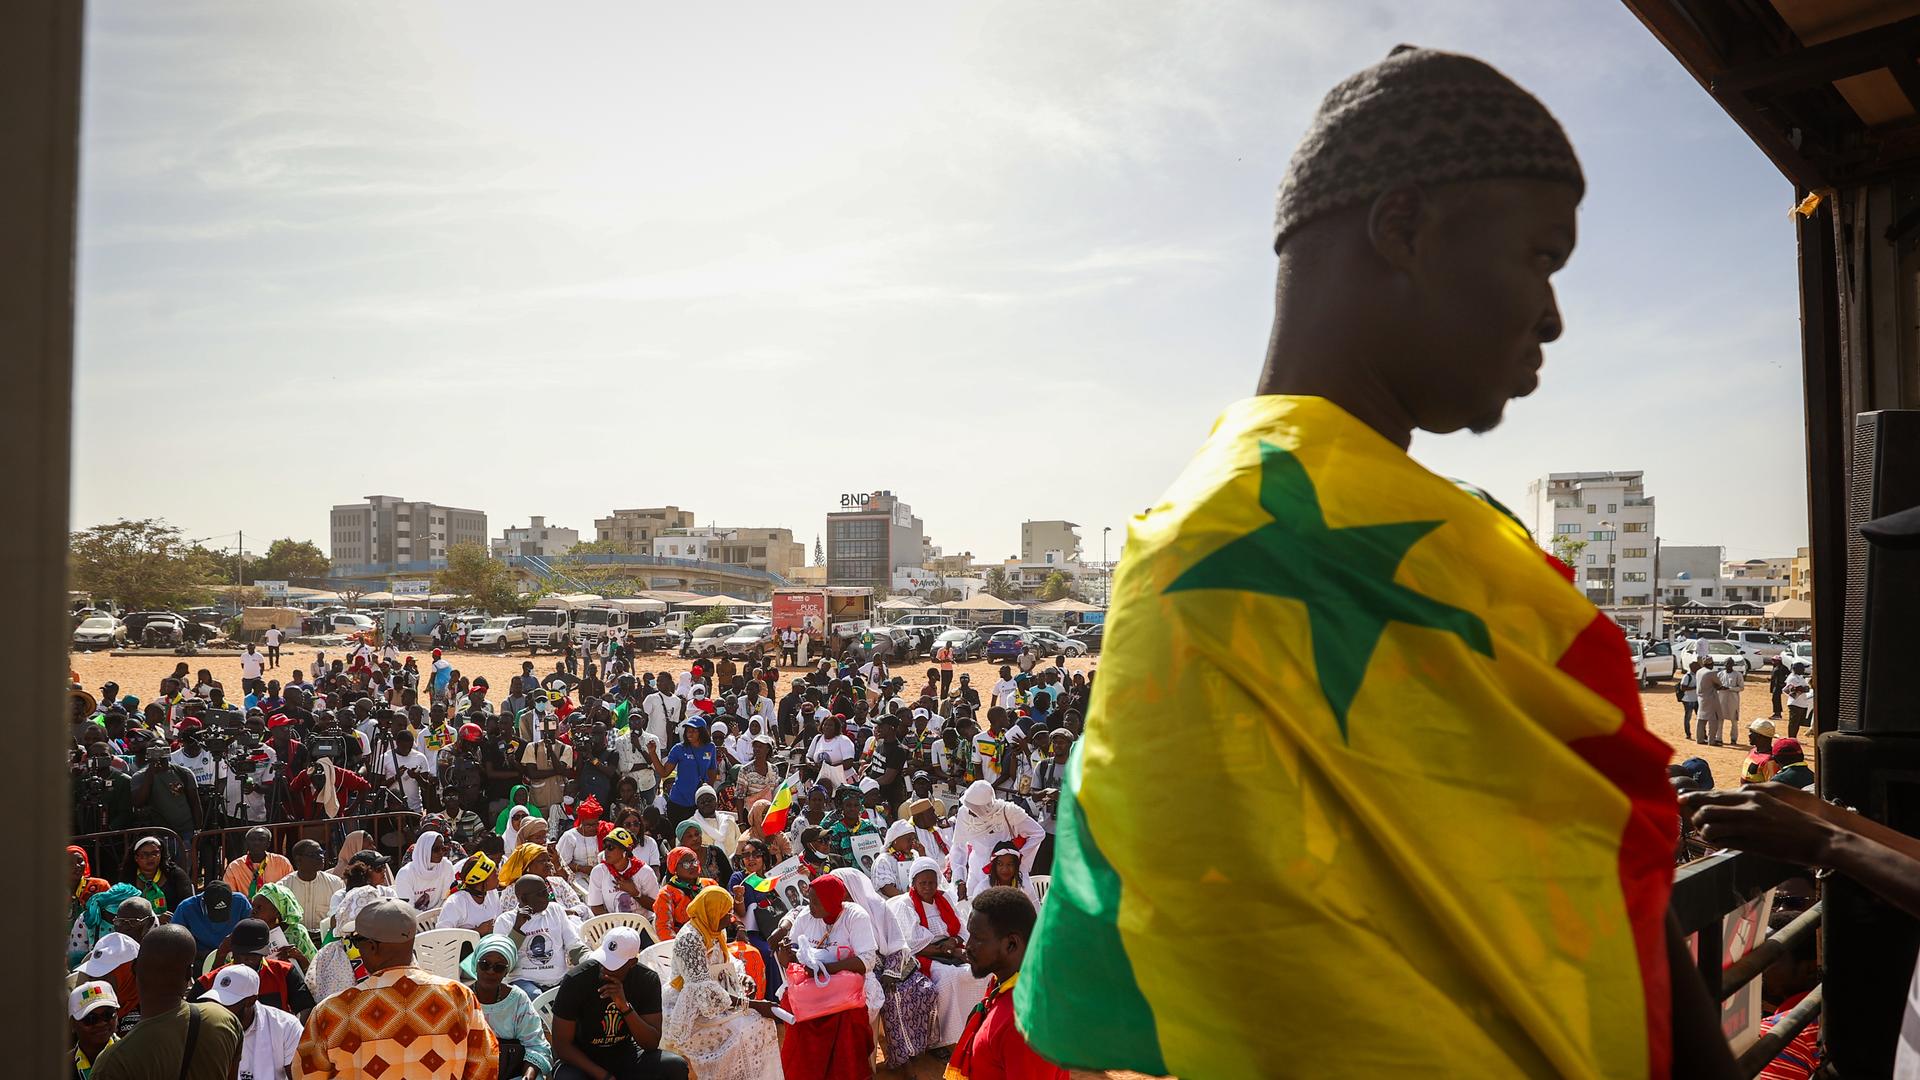  Im Bildvordergrund ist ein junger Mann eingehüllt in die senegalesische Flagge zu sehen. Im Hintergrund die von zivilgesellschaftlichen Organisationen einberufene Demonstration, auf der viele Menschen gegen die Entscheidung von Präsident Macky Sall, die Wahlen zu verschieben protestieren.

